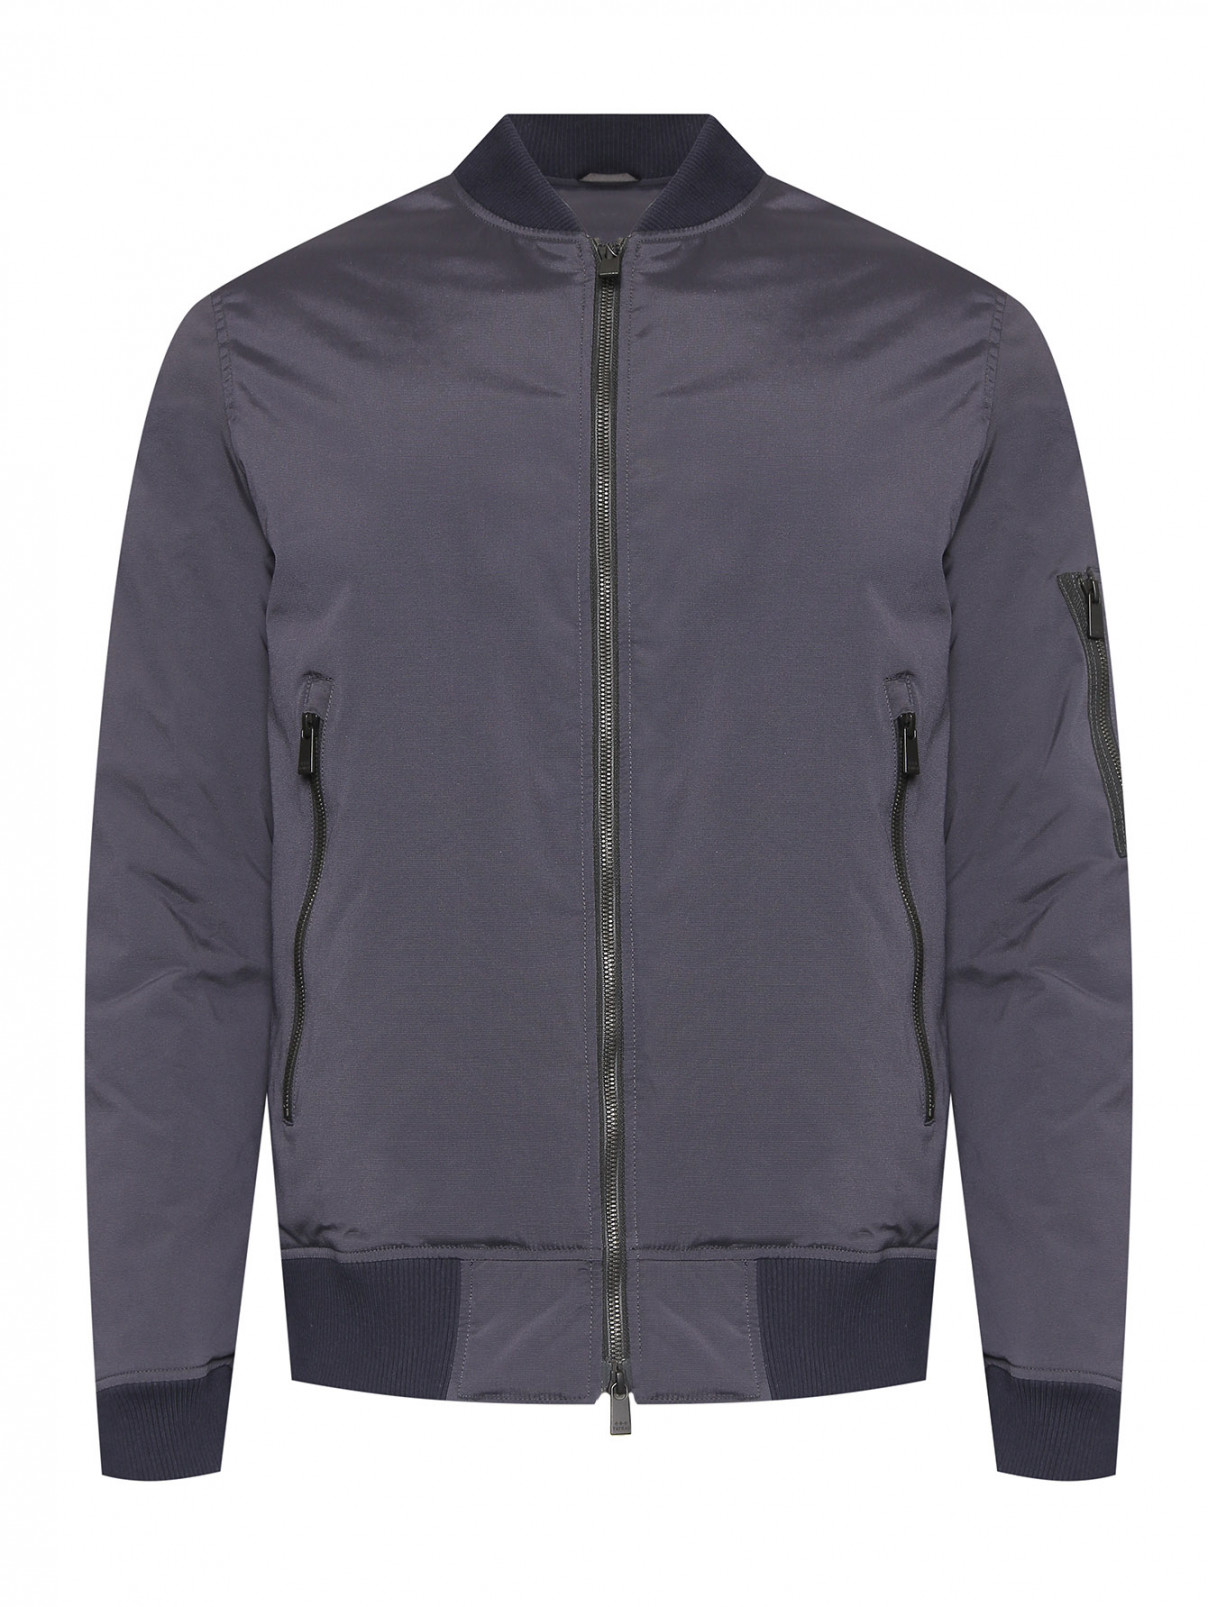 Пуховая куртка-бомбер с карманами Tatras  –  Общий вид  – Цвет:  Синий